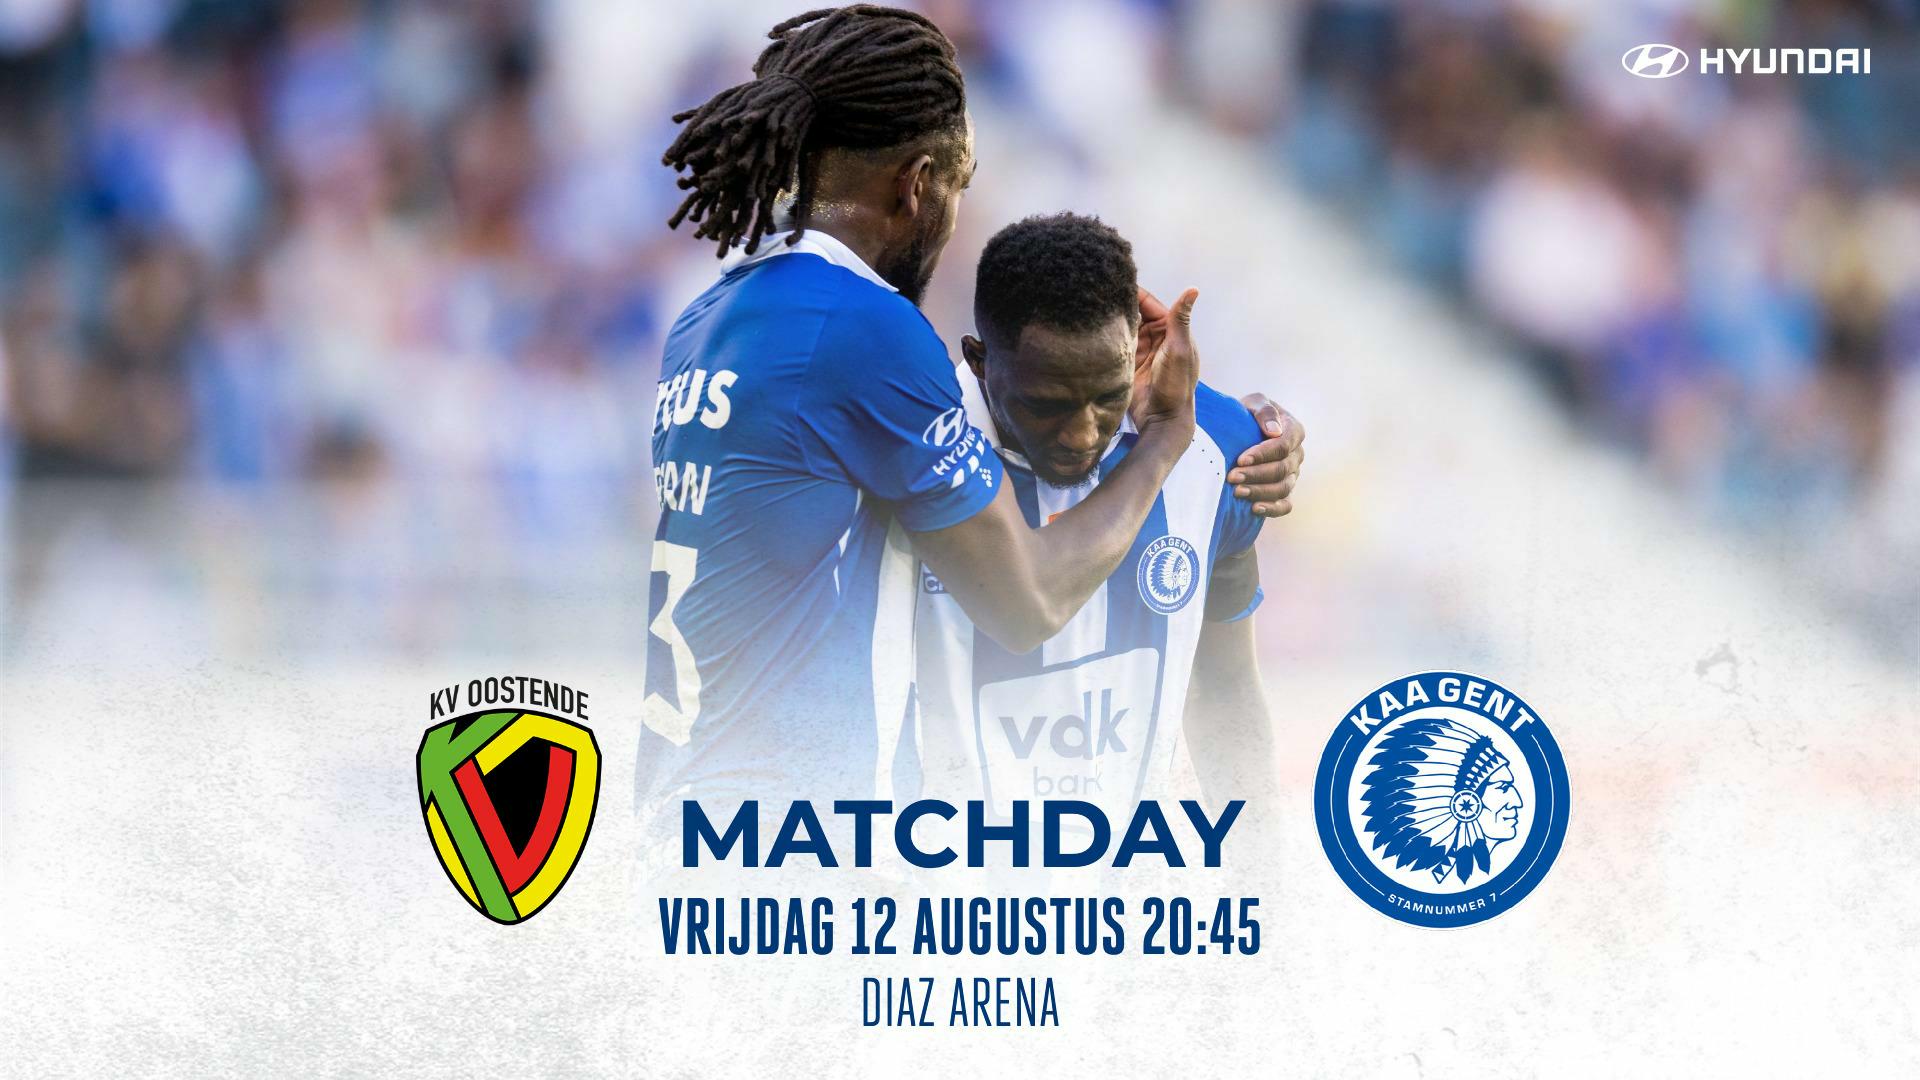 Next Match: KV Oostende - KAA Gent